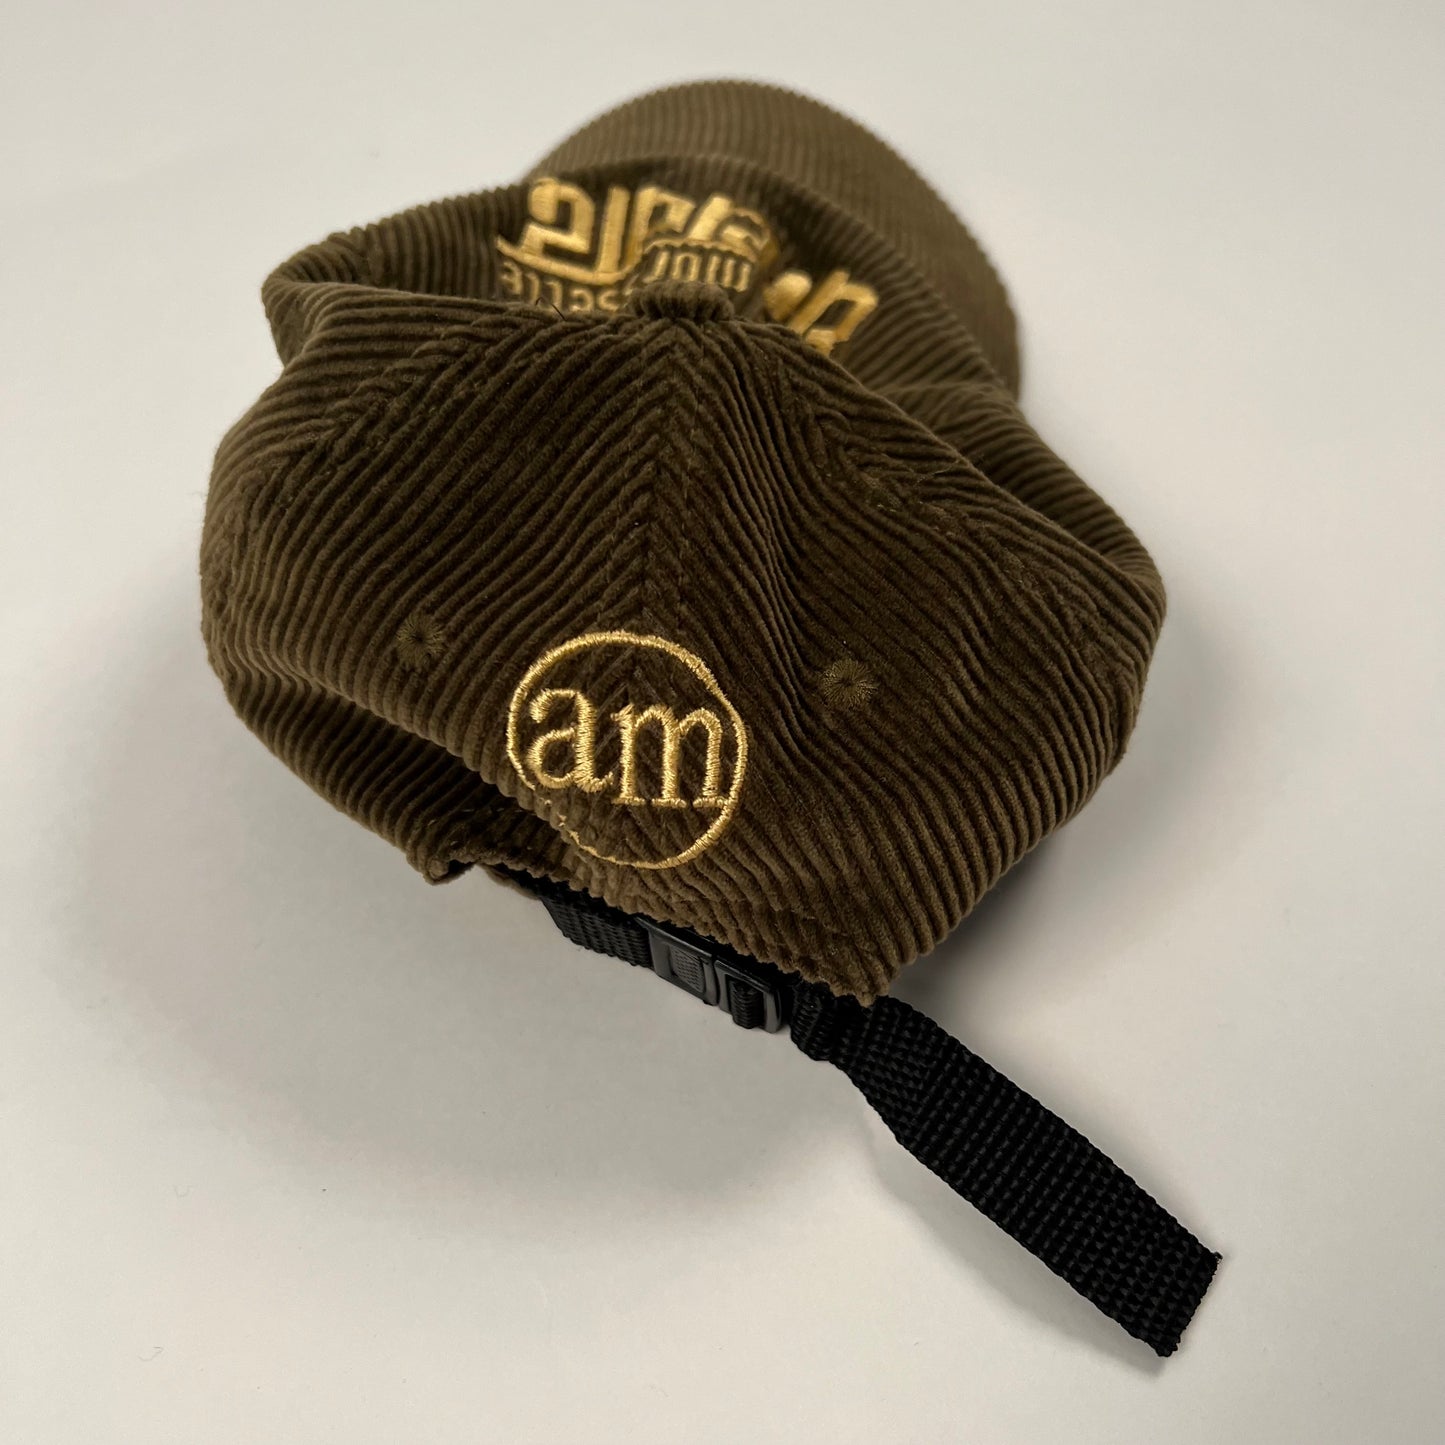 Vintage 90s Alanis Morissette Hat